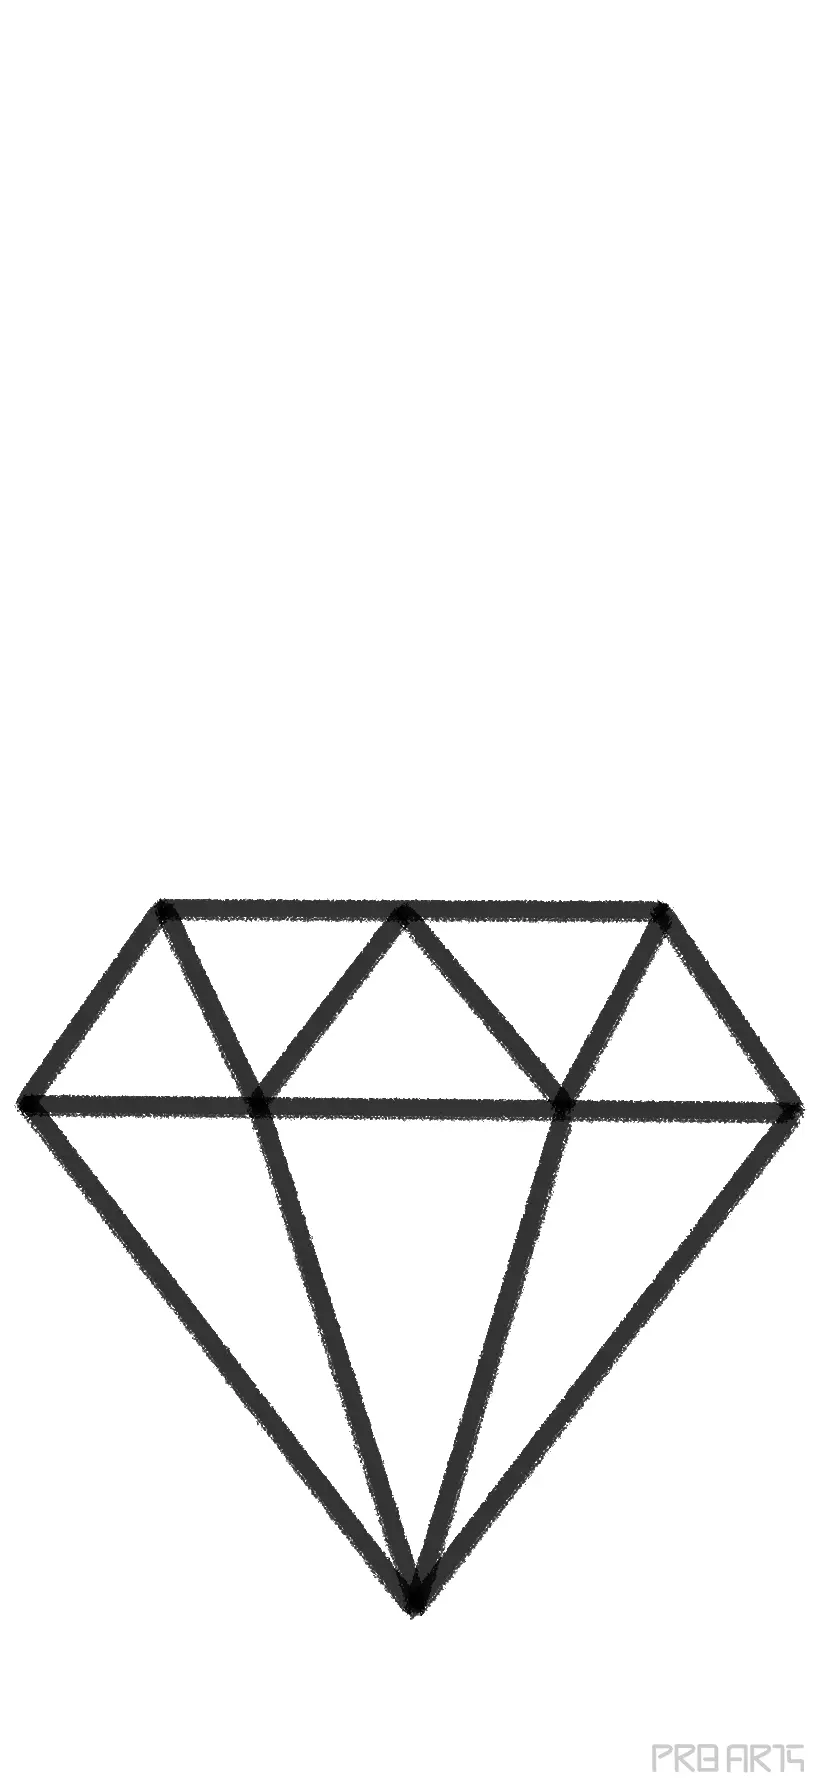 Diamond Drawing Tutorial  How to draw Diamond step by step